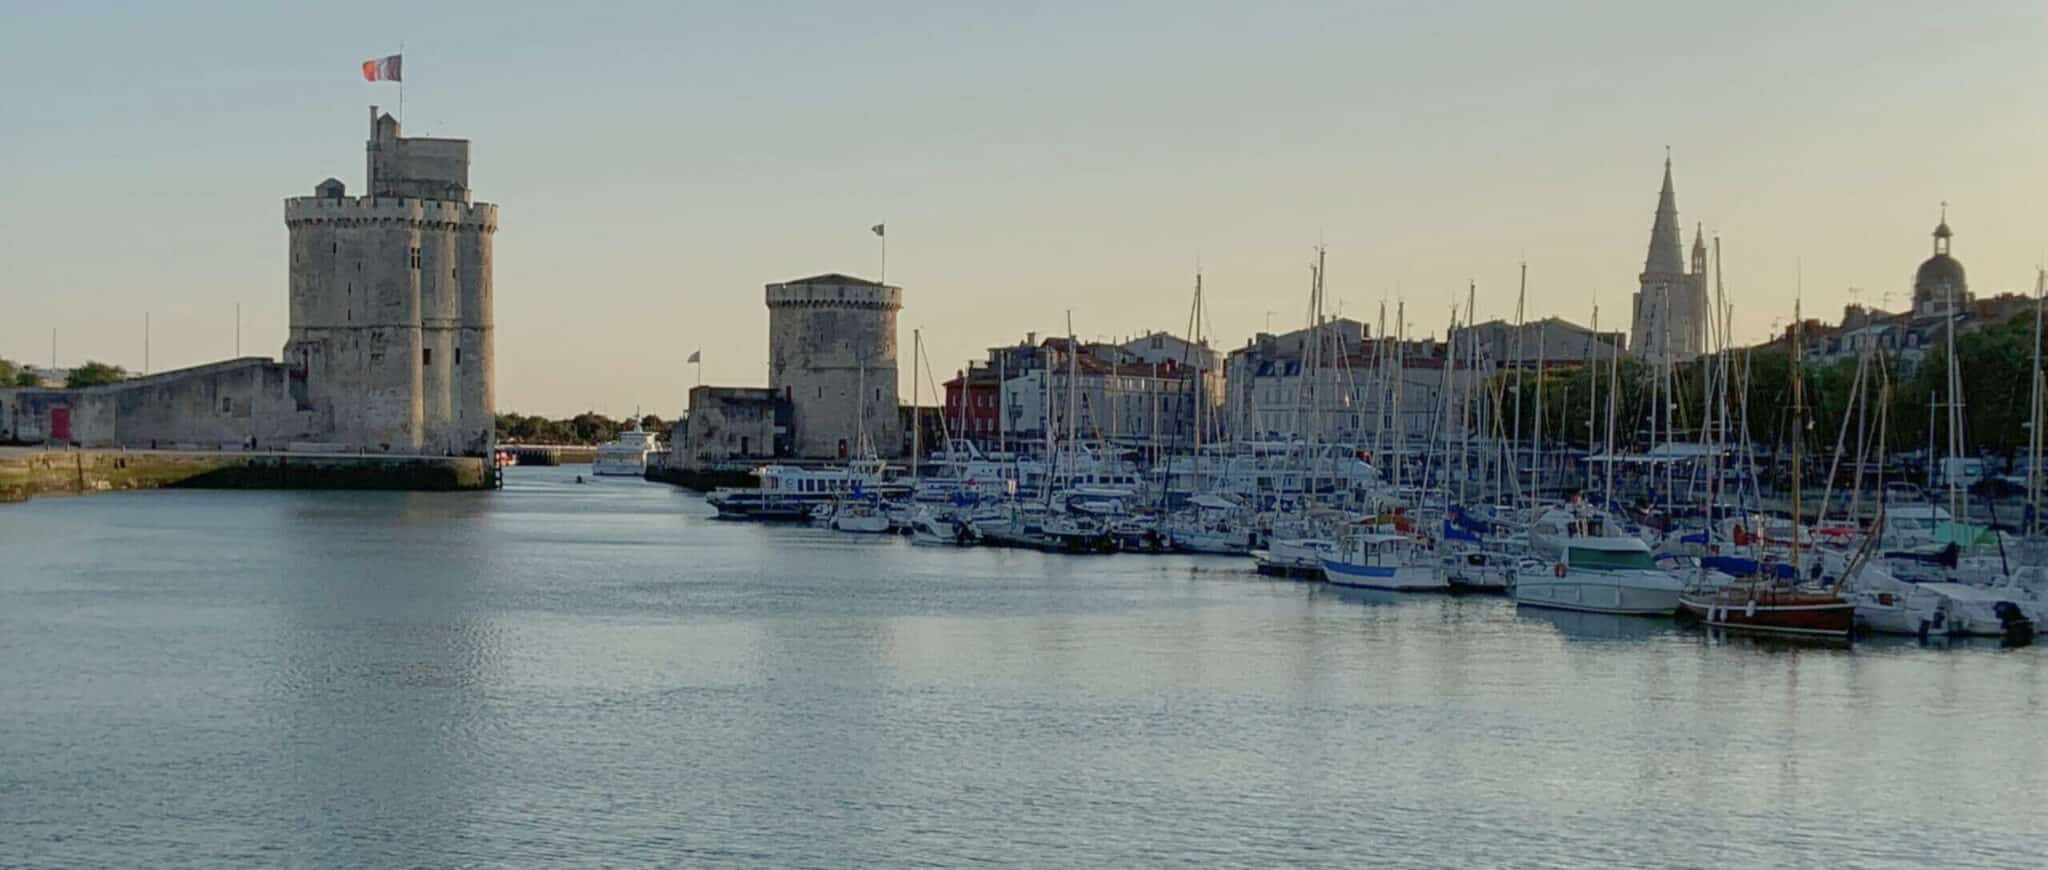 Dany Petit Conseil - Experte Viager et Immobilier en Charente Maritime : la rochelle, ile de ré, oléron, royan, saintes